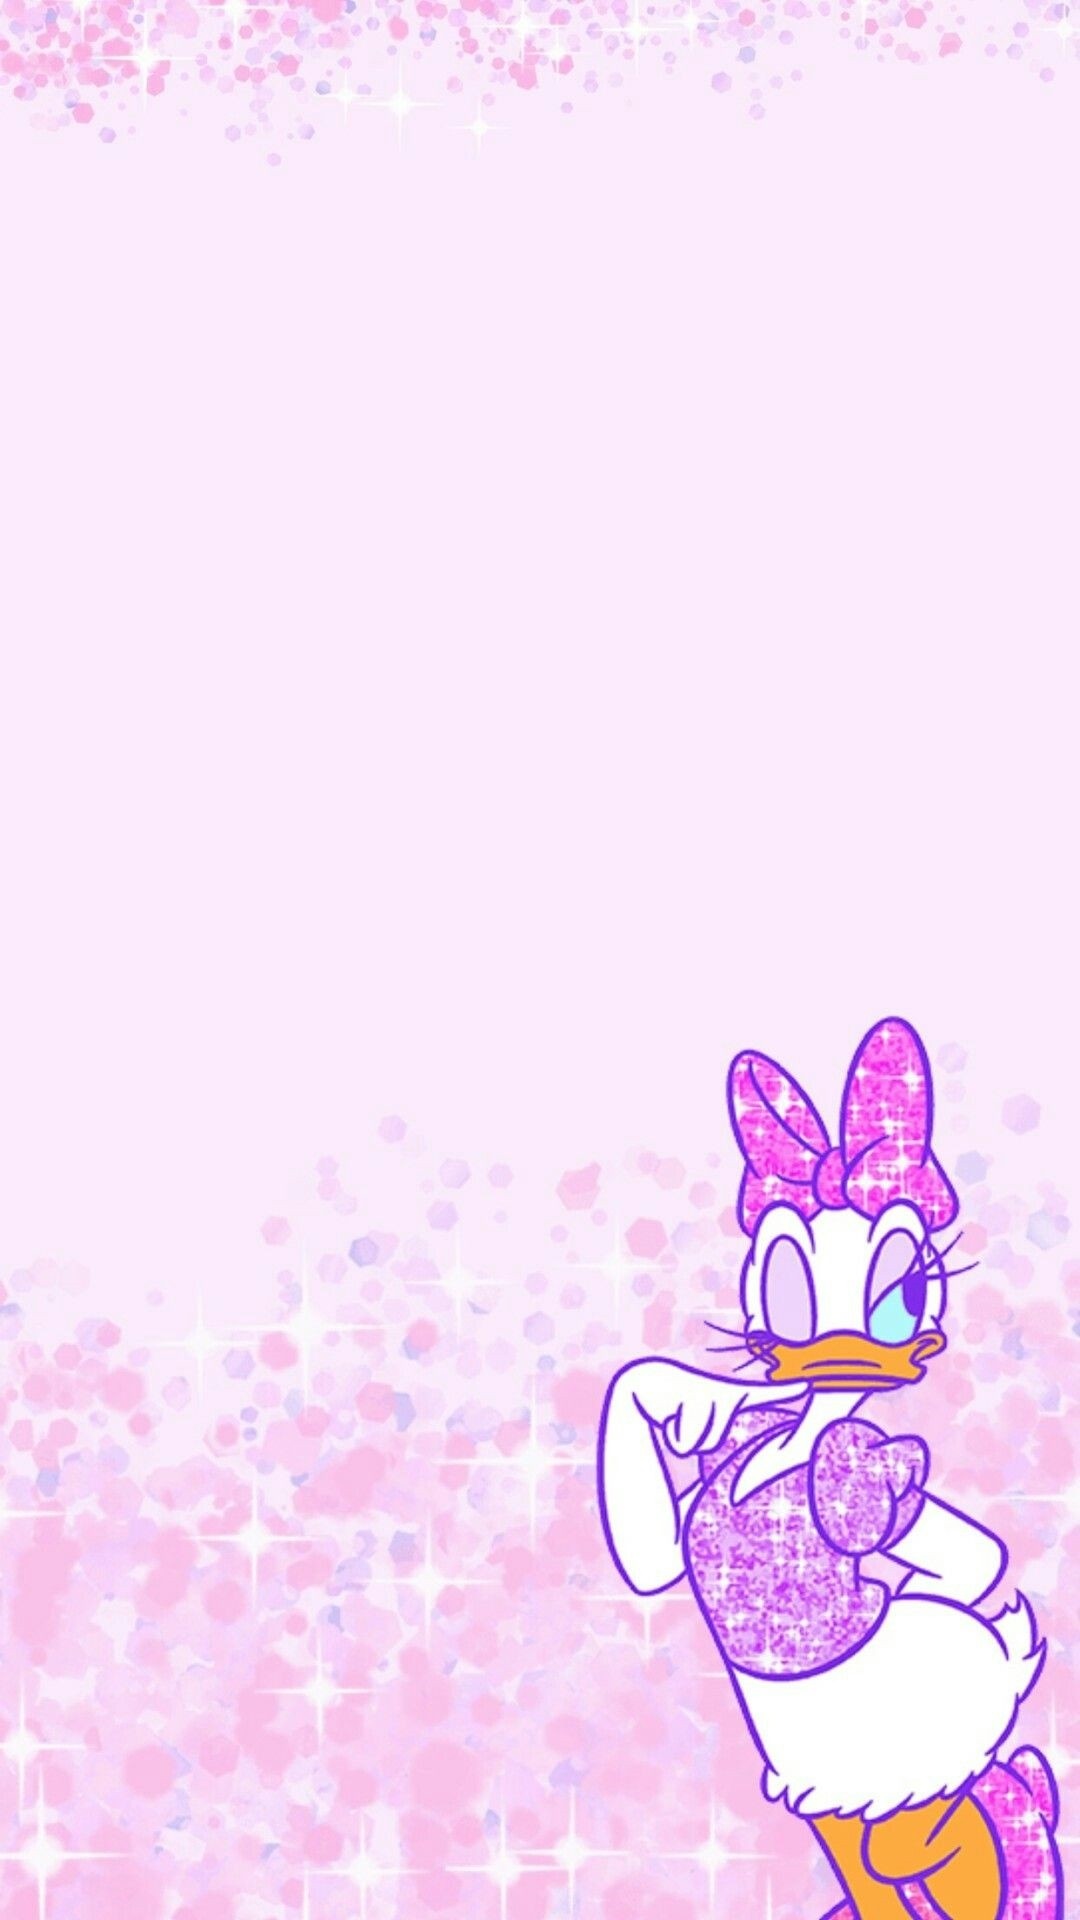 Daisy Duck, Cute Disney wallpapers, 1080x1920 Full HD Phone